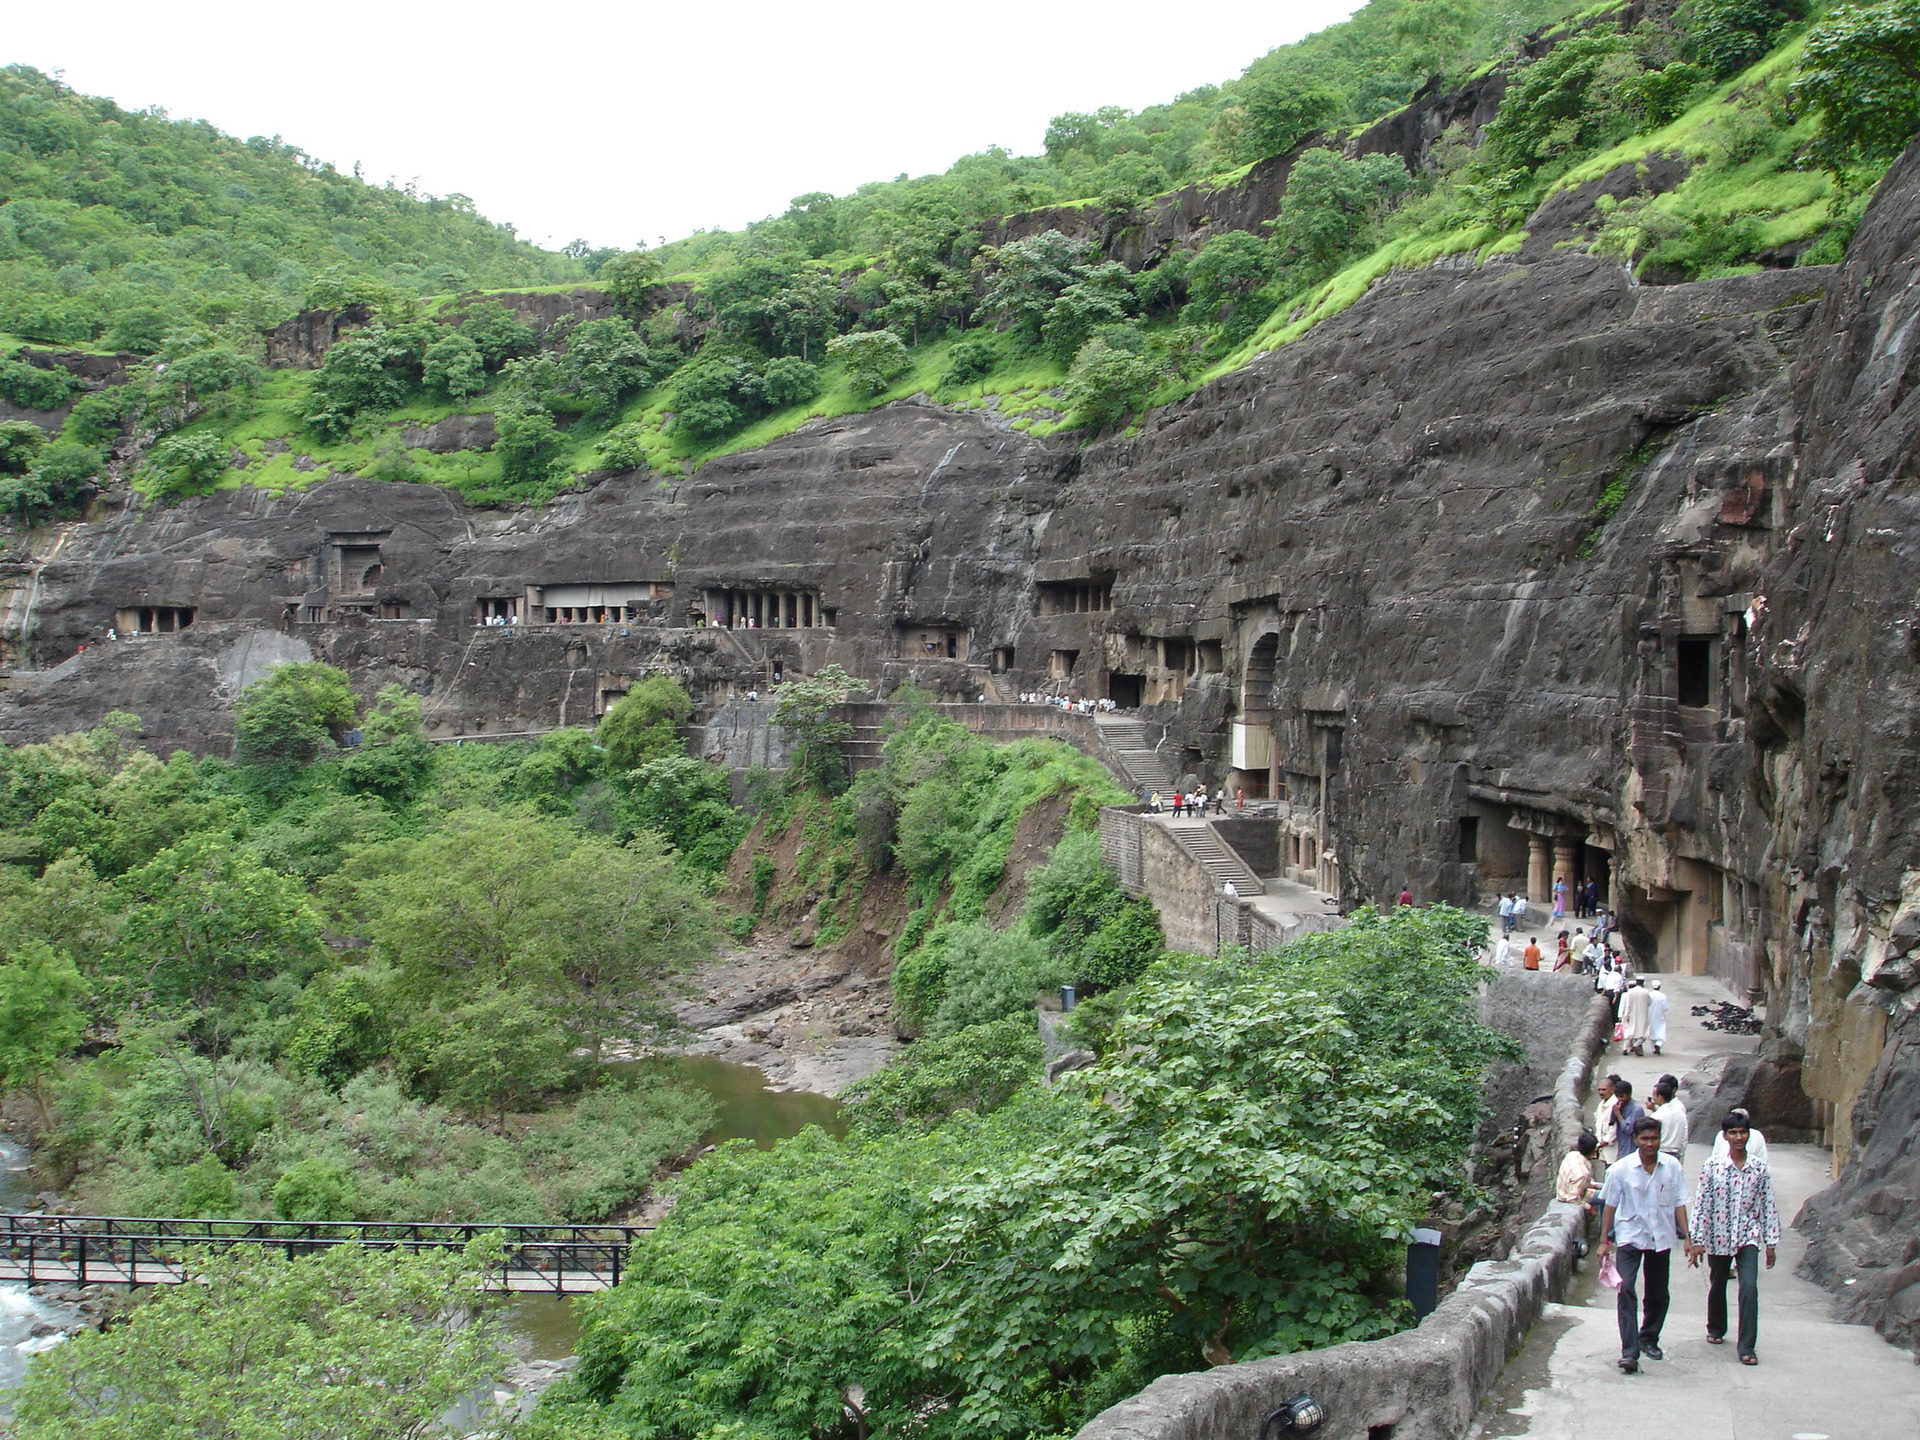 Ajantu Caves, Indie